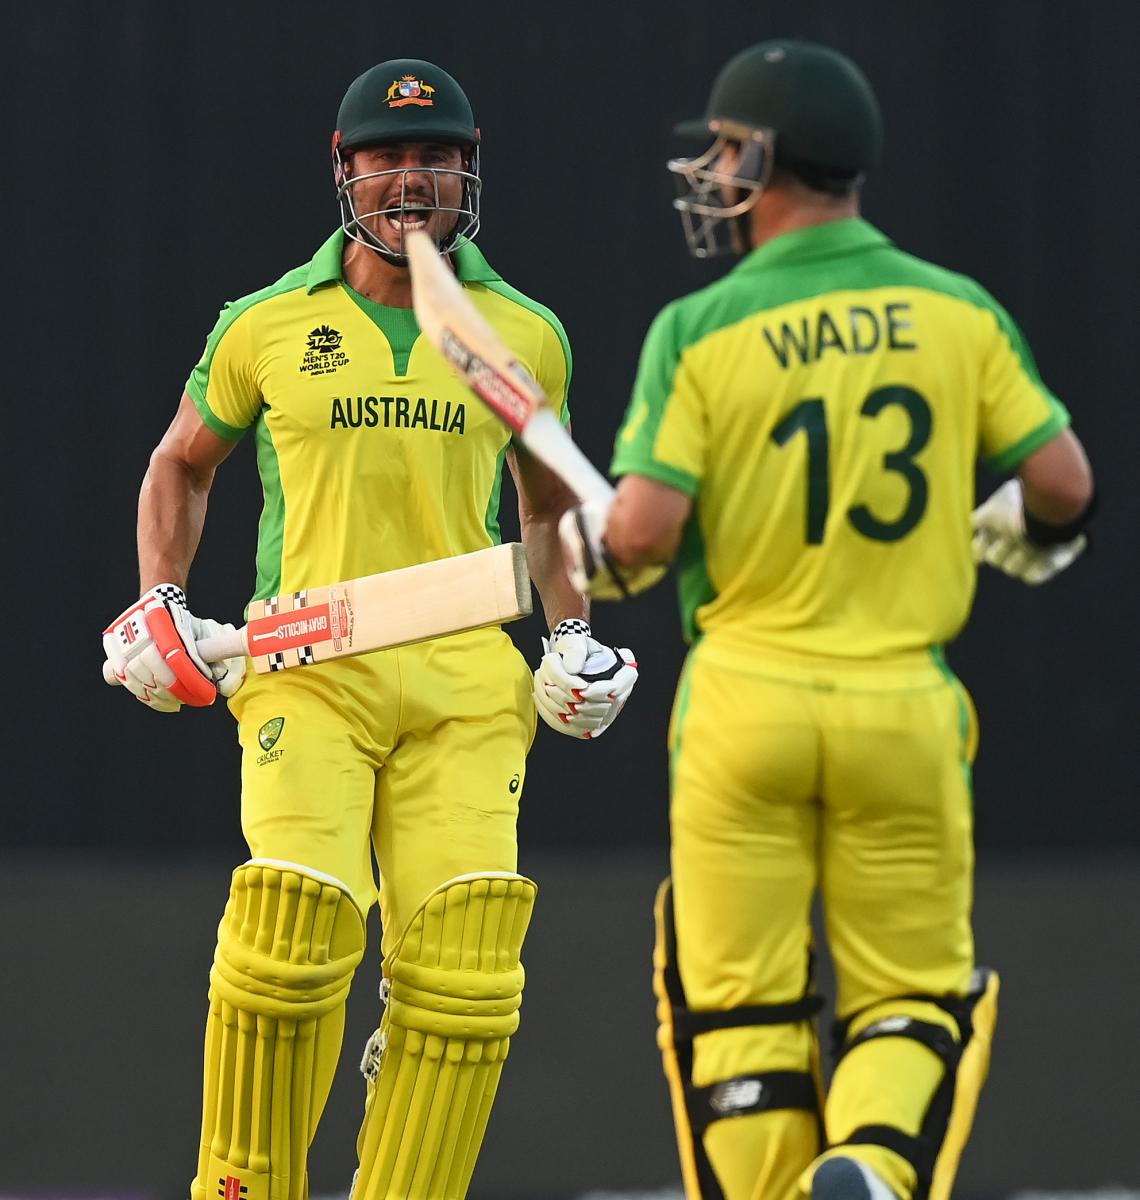 Australia vs South Africa photo / Source: Cricket Australia